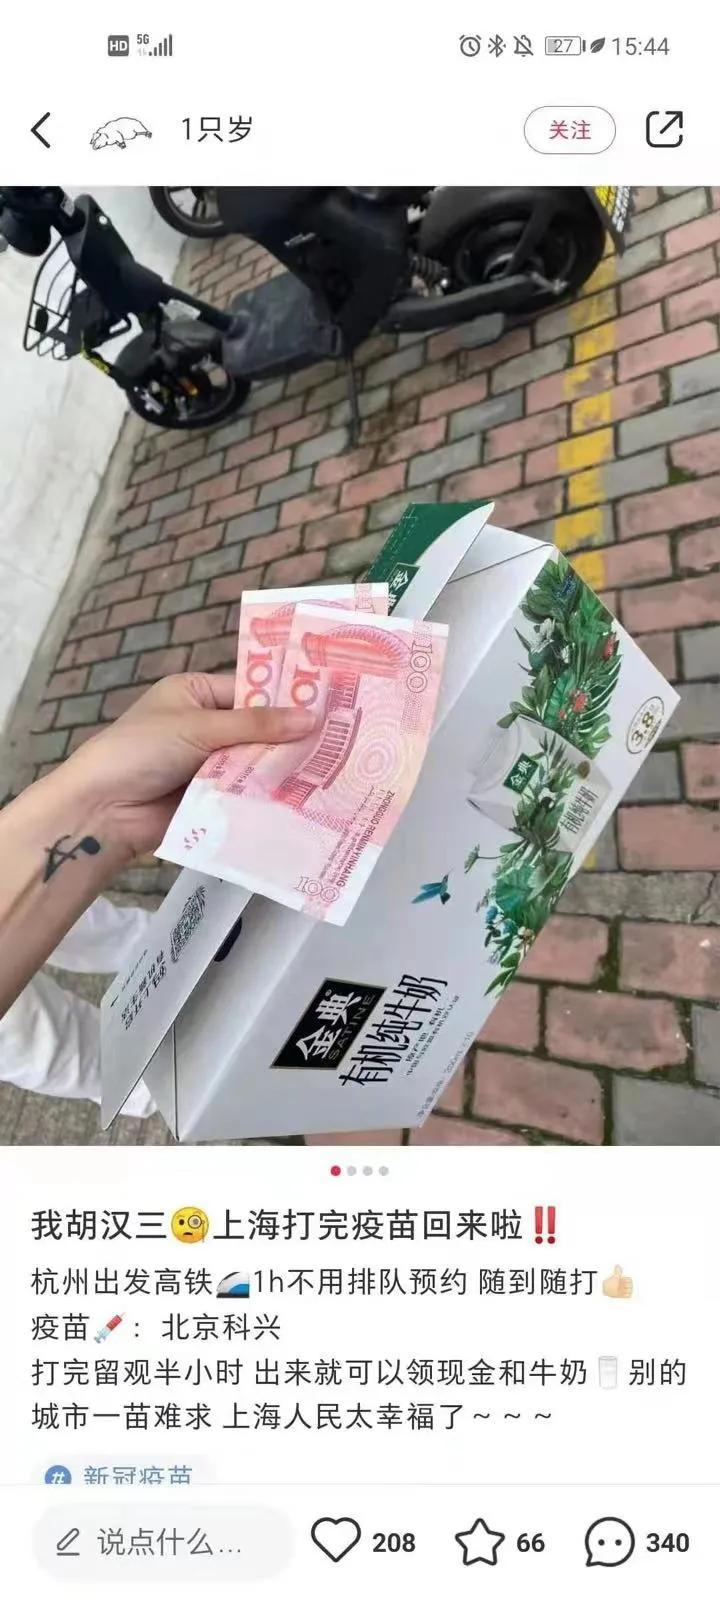 上海打拿补贴是吗?上海打补贴500是真的吗